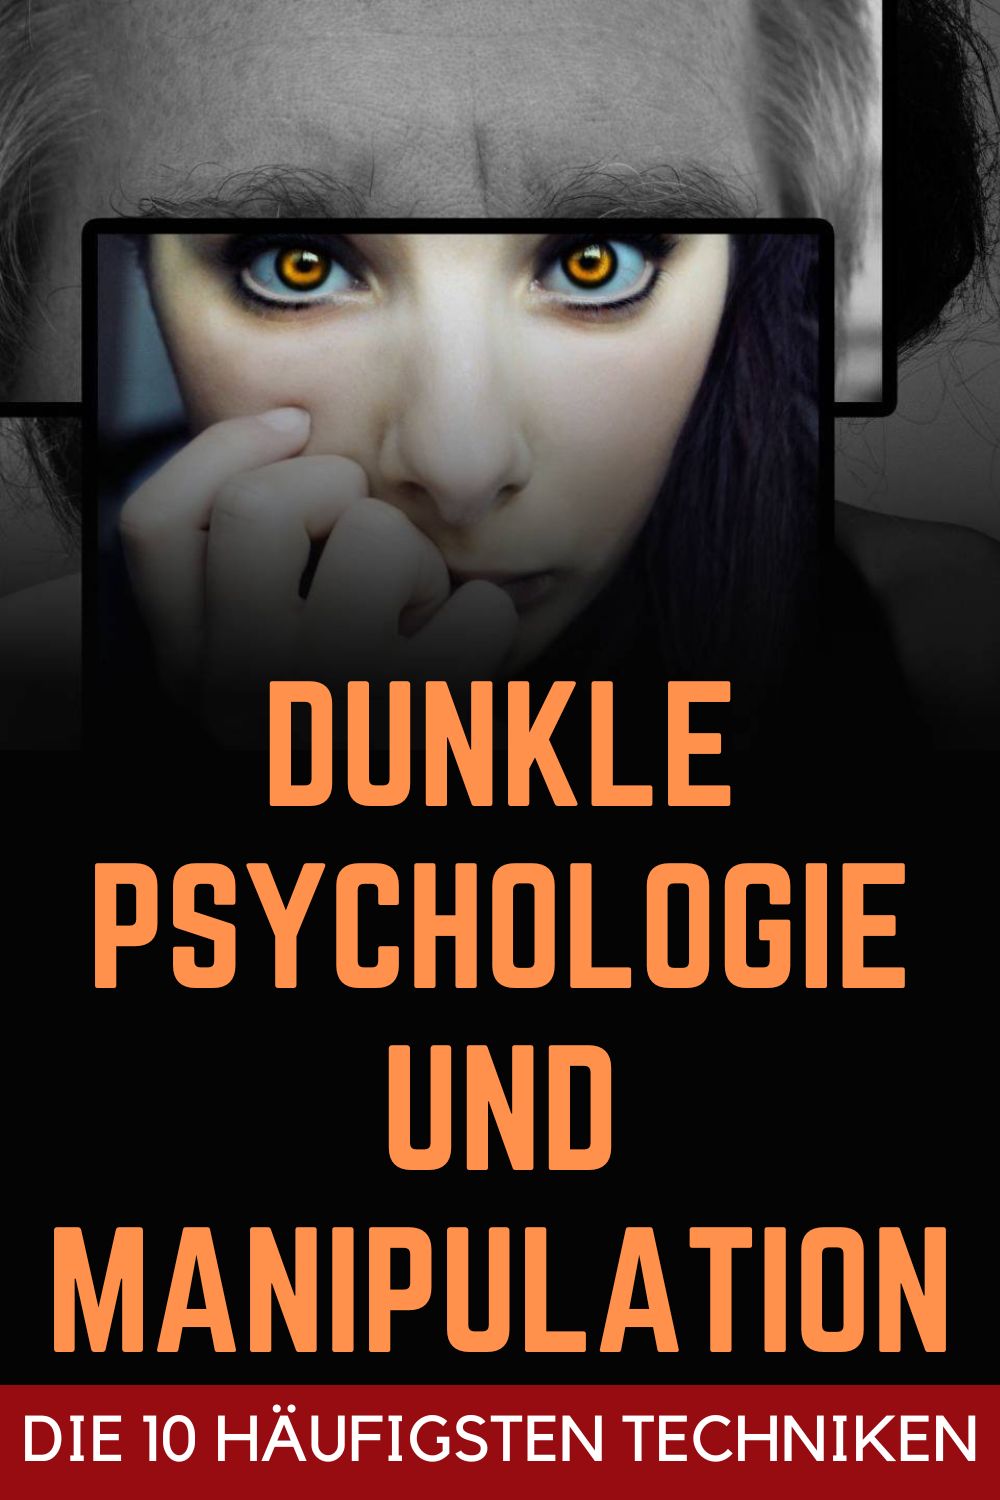 Dunkle-Psychologie-und-Manipulation-die-10-haeufigsten-Techniken